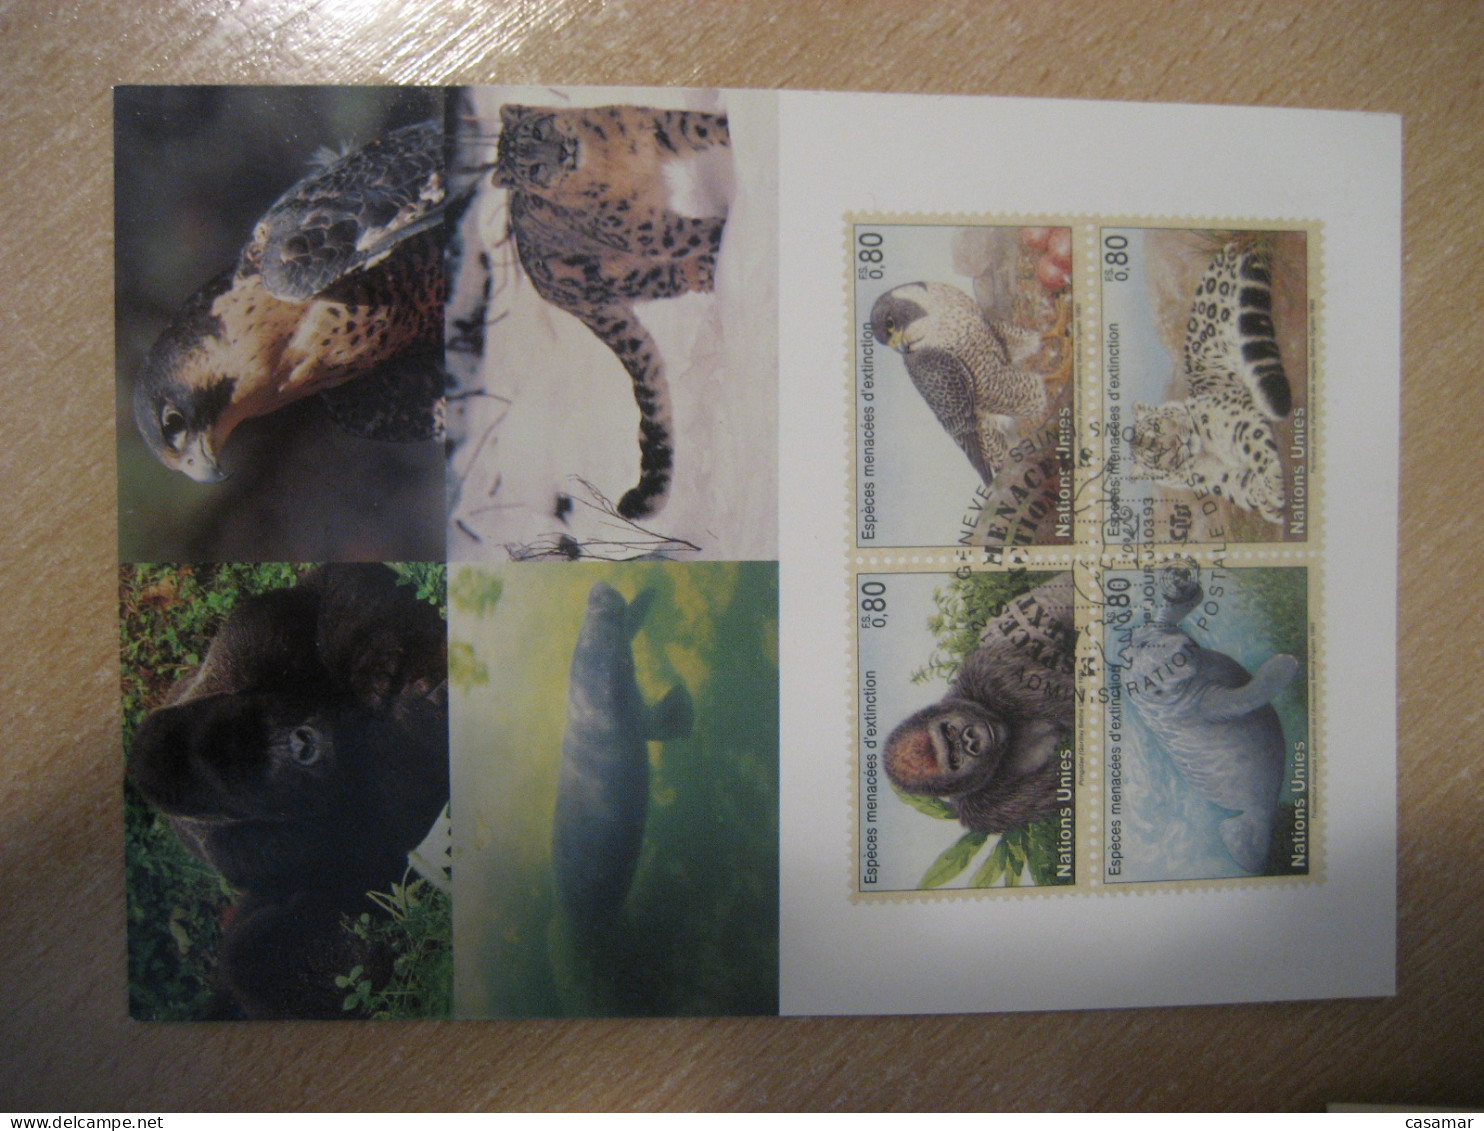 GENEVE 1993 Extinction Gorilla Gorillas Gorille Gorilles Falcon Panther Manatee Sea Cow Maxi Maximum Card UNITED NATIONS - Gorilla